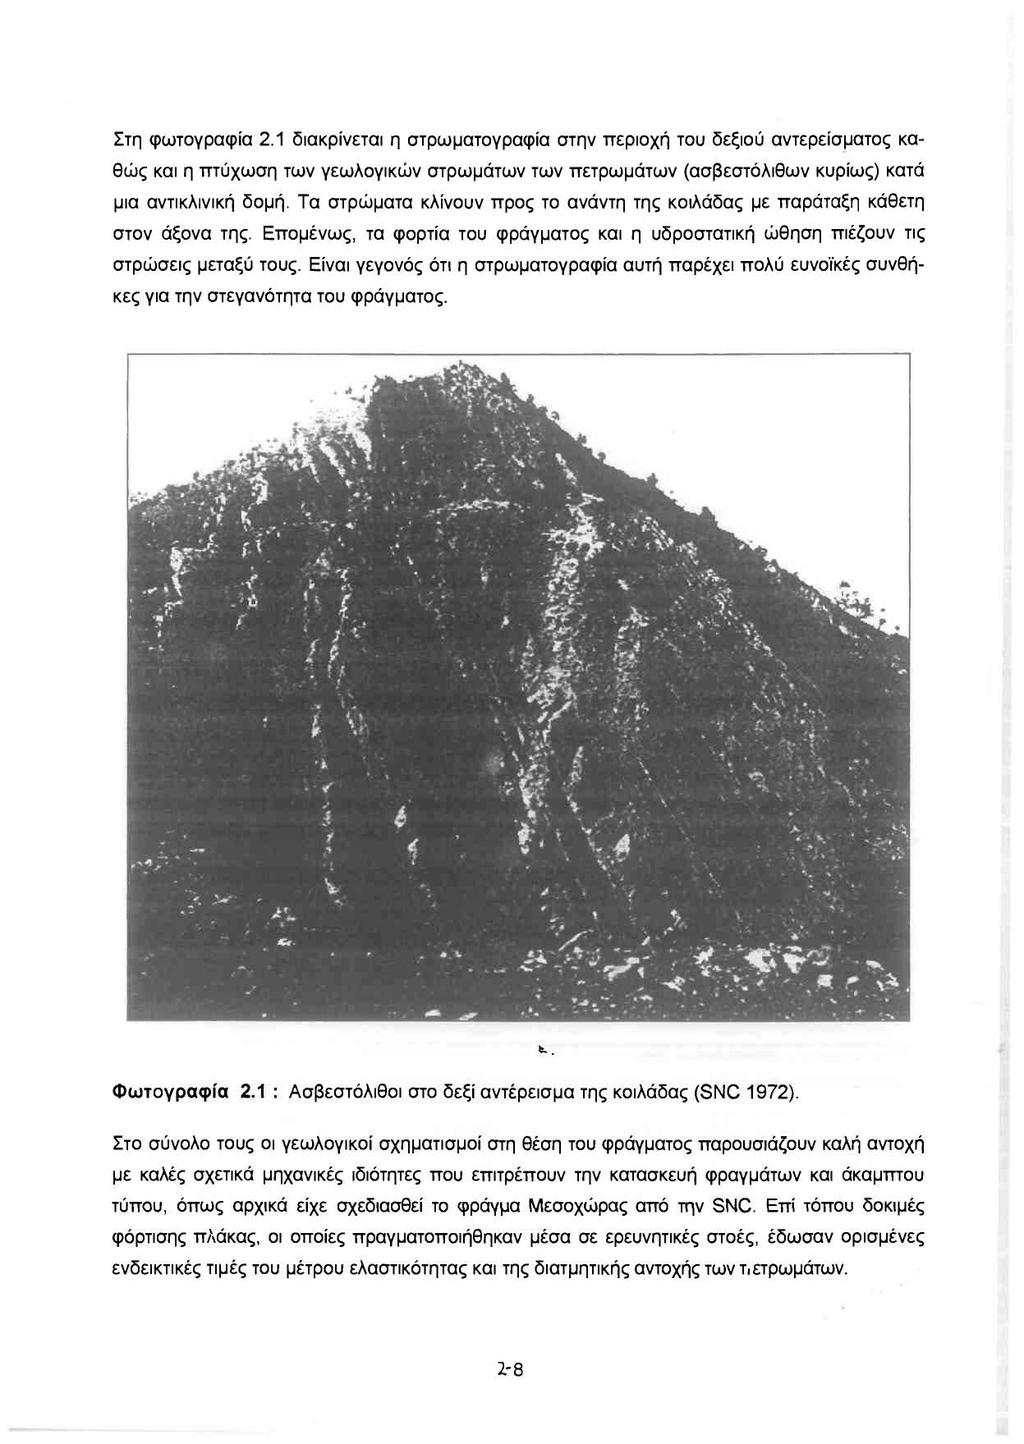 Στη φωτογραφία 2.1 διακρίνεται η στρωματογραφία στην περιοχή του δεξιού αντερείσματος καθώς και η mύχωση των γεωλογικών στρωμάτων των πετρωμάτων (ασβεστόλιθων κυρίως) κατά μια αντικλινική δομή.